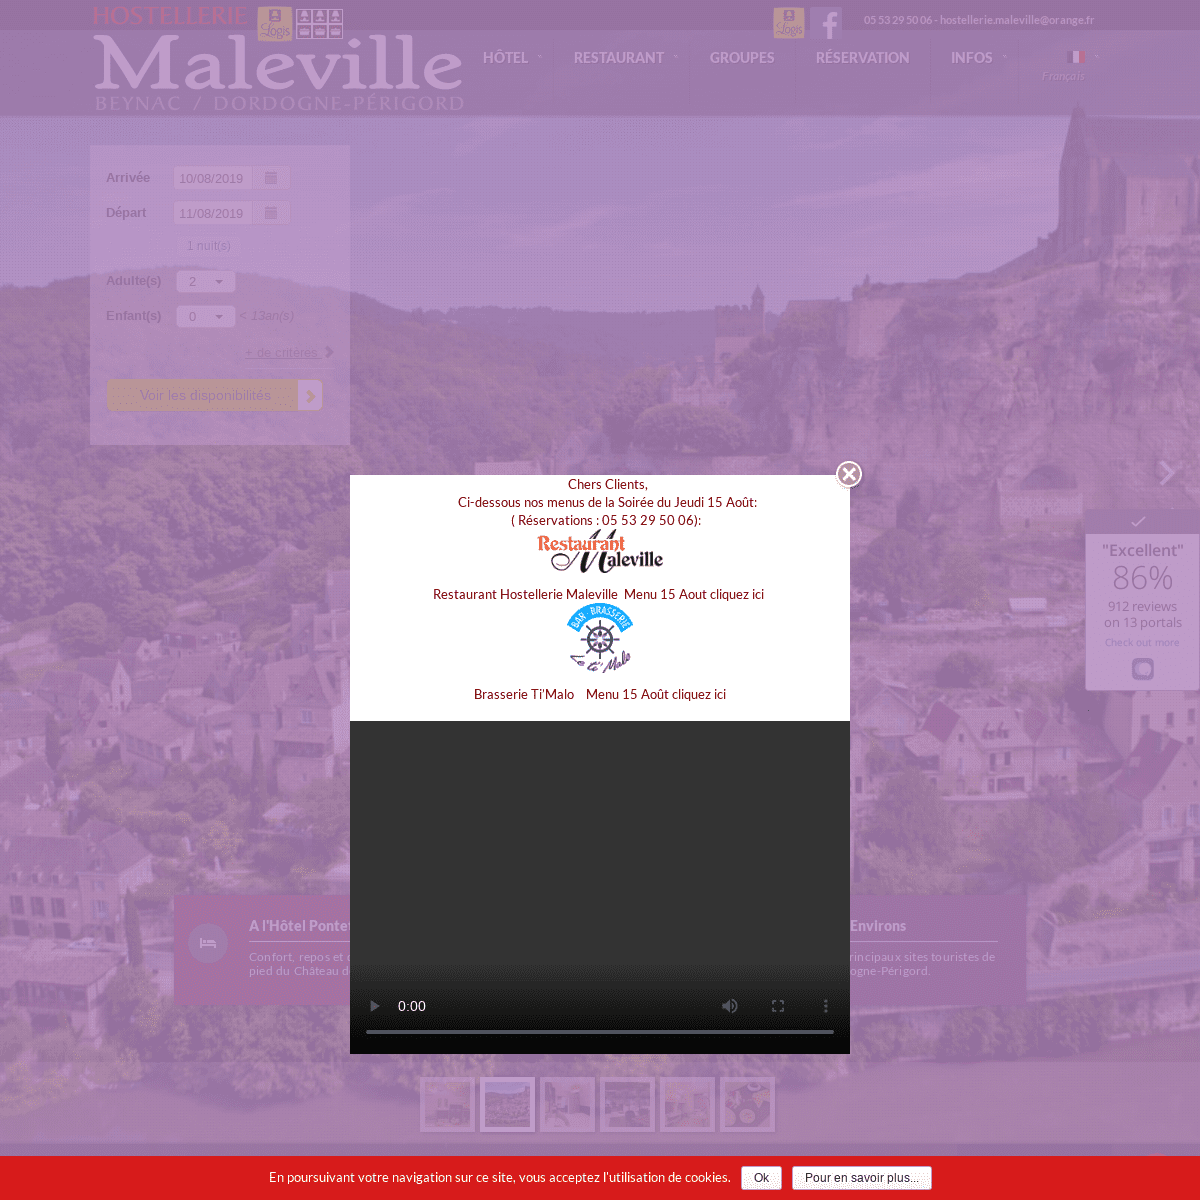 A complete backup of hostellerie-maleville.com